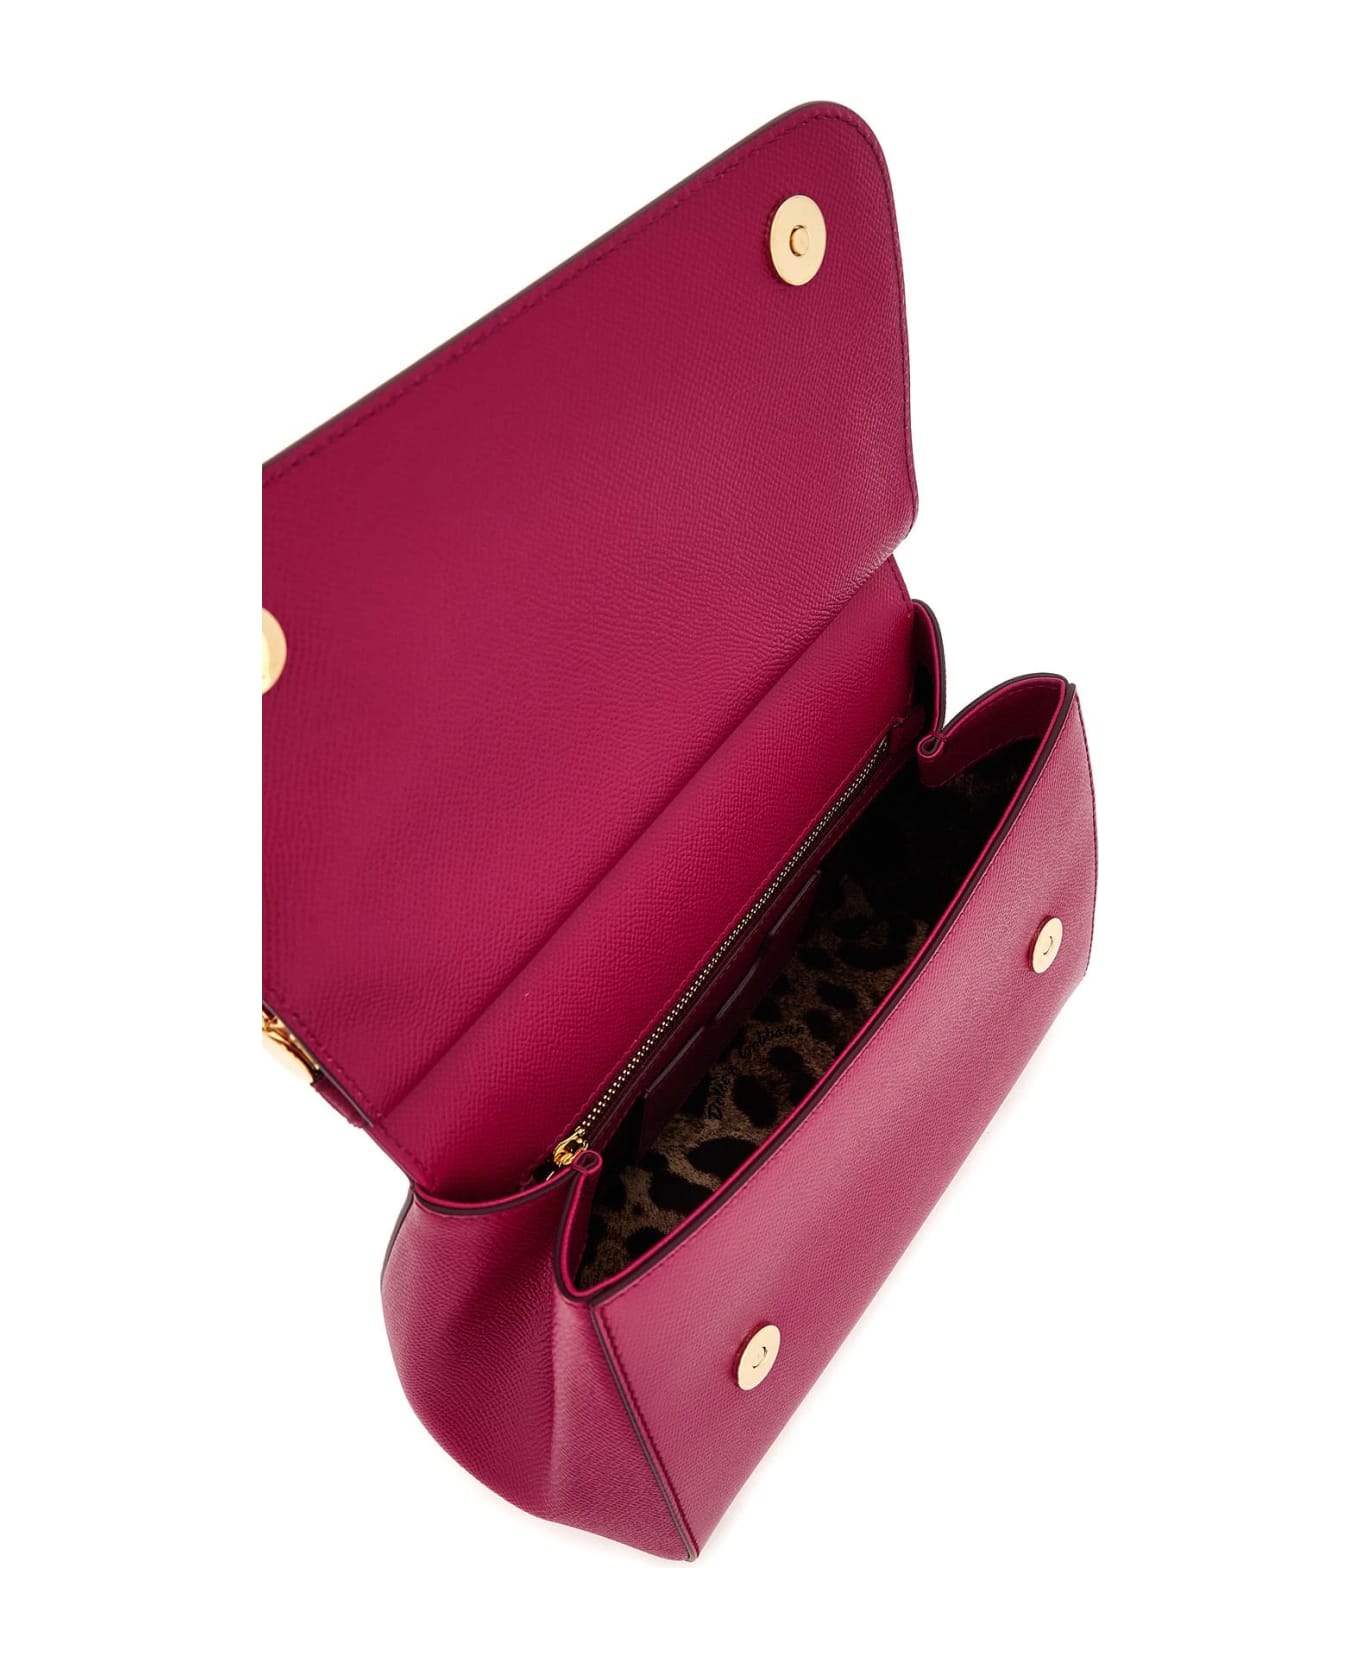 Dolce & Gabbana Sicily Handbag - Fuchsia